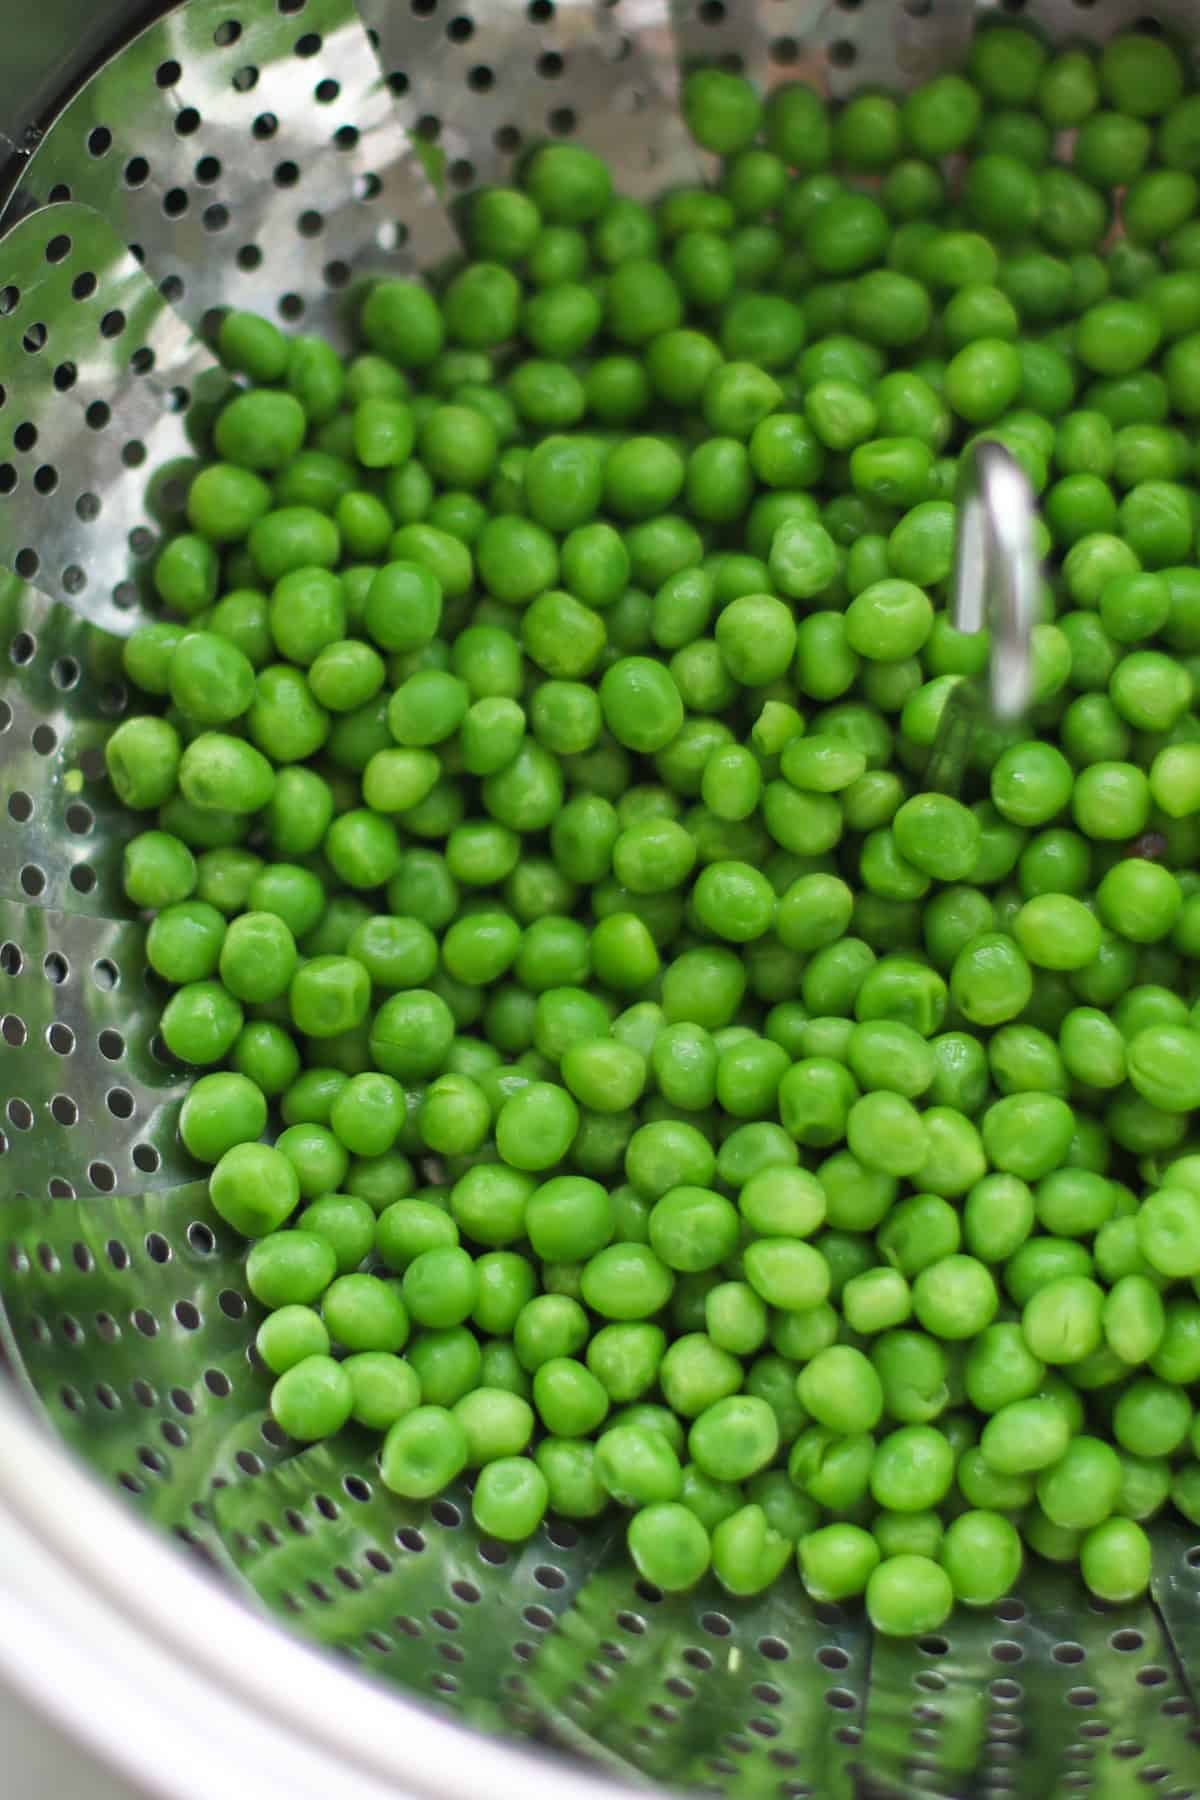 Steamed frozen peas in a steamer basket.